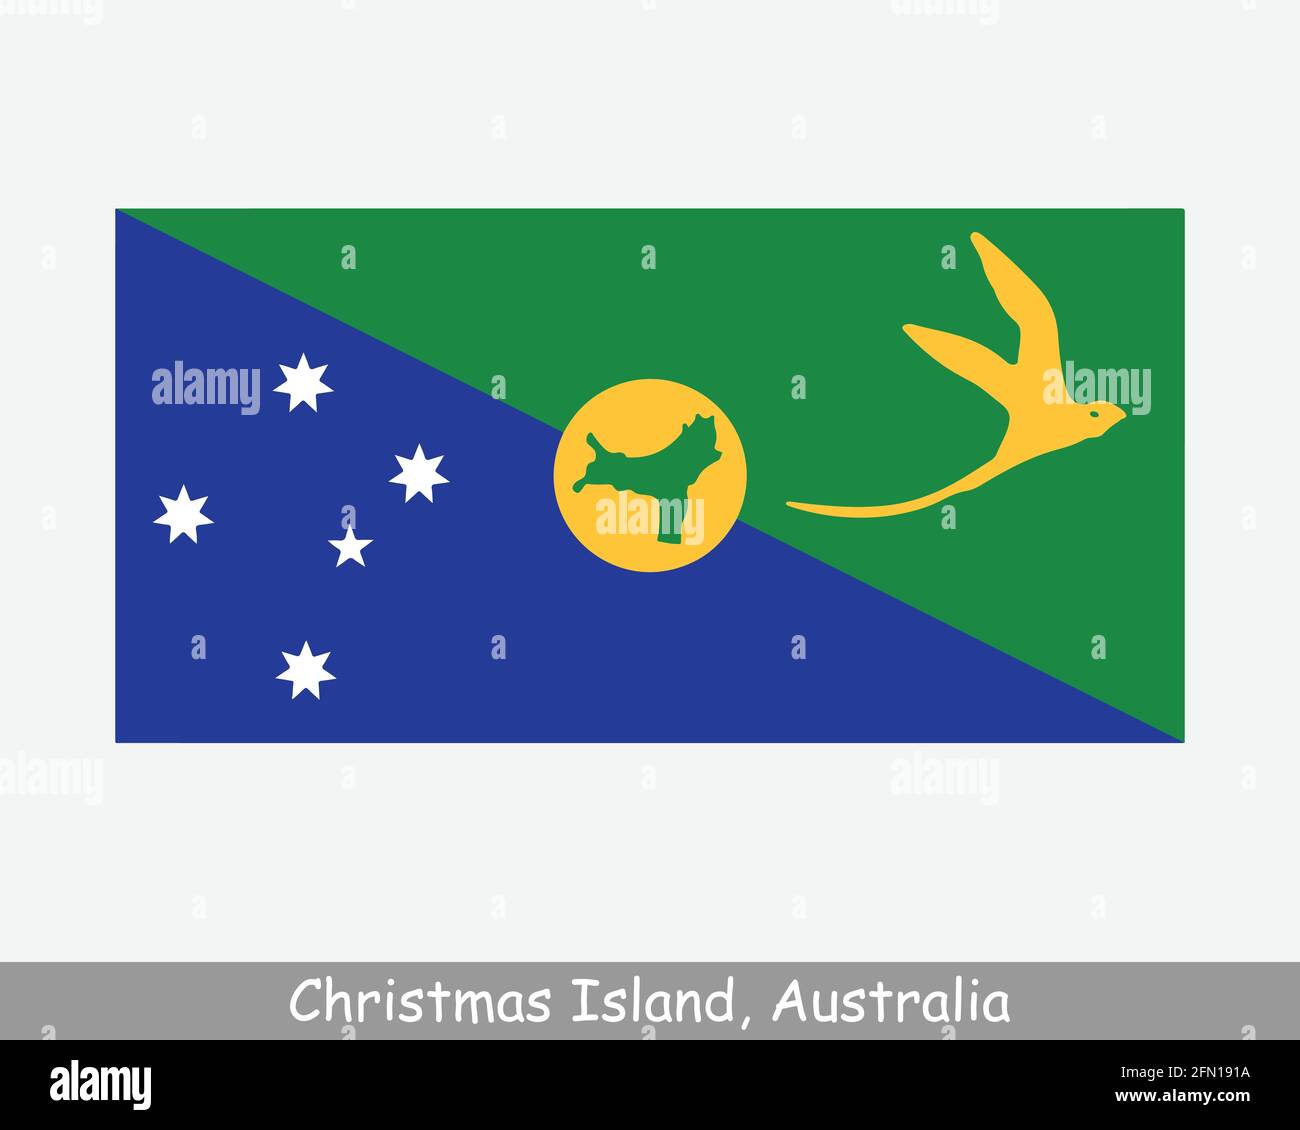 Drapeau de l'île Christmas. Territoire australien de l'océan Indien, territoire externe de l'Australie. Bannière de fichier de découpe d'illustration de vecteur EPS Illustration de Vecteur